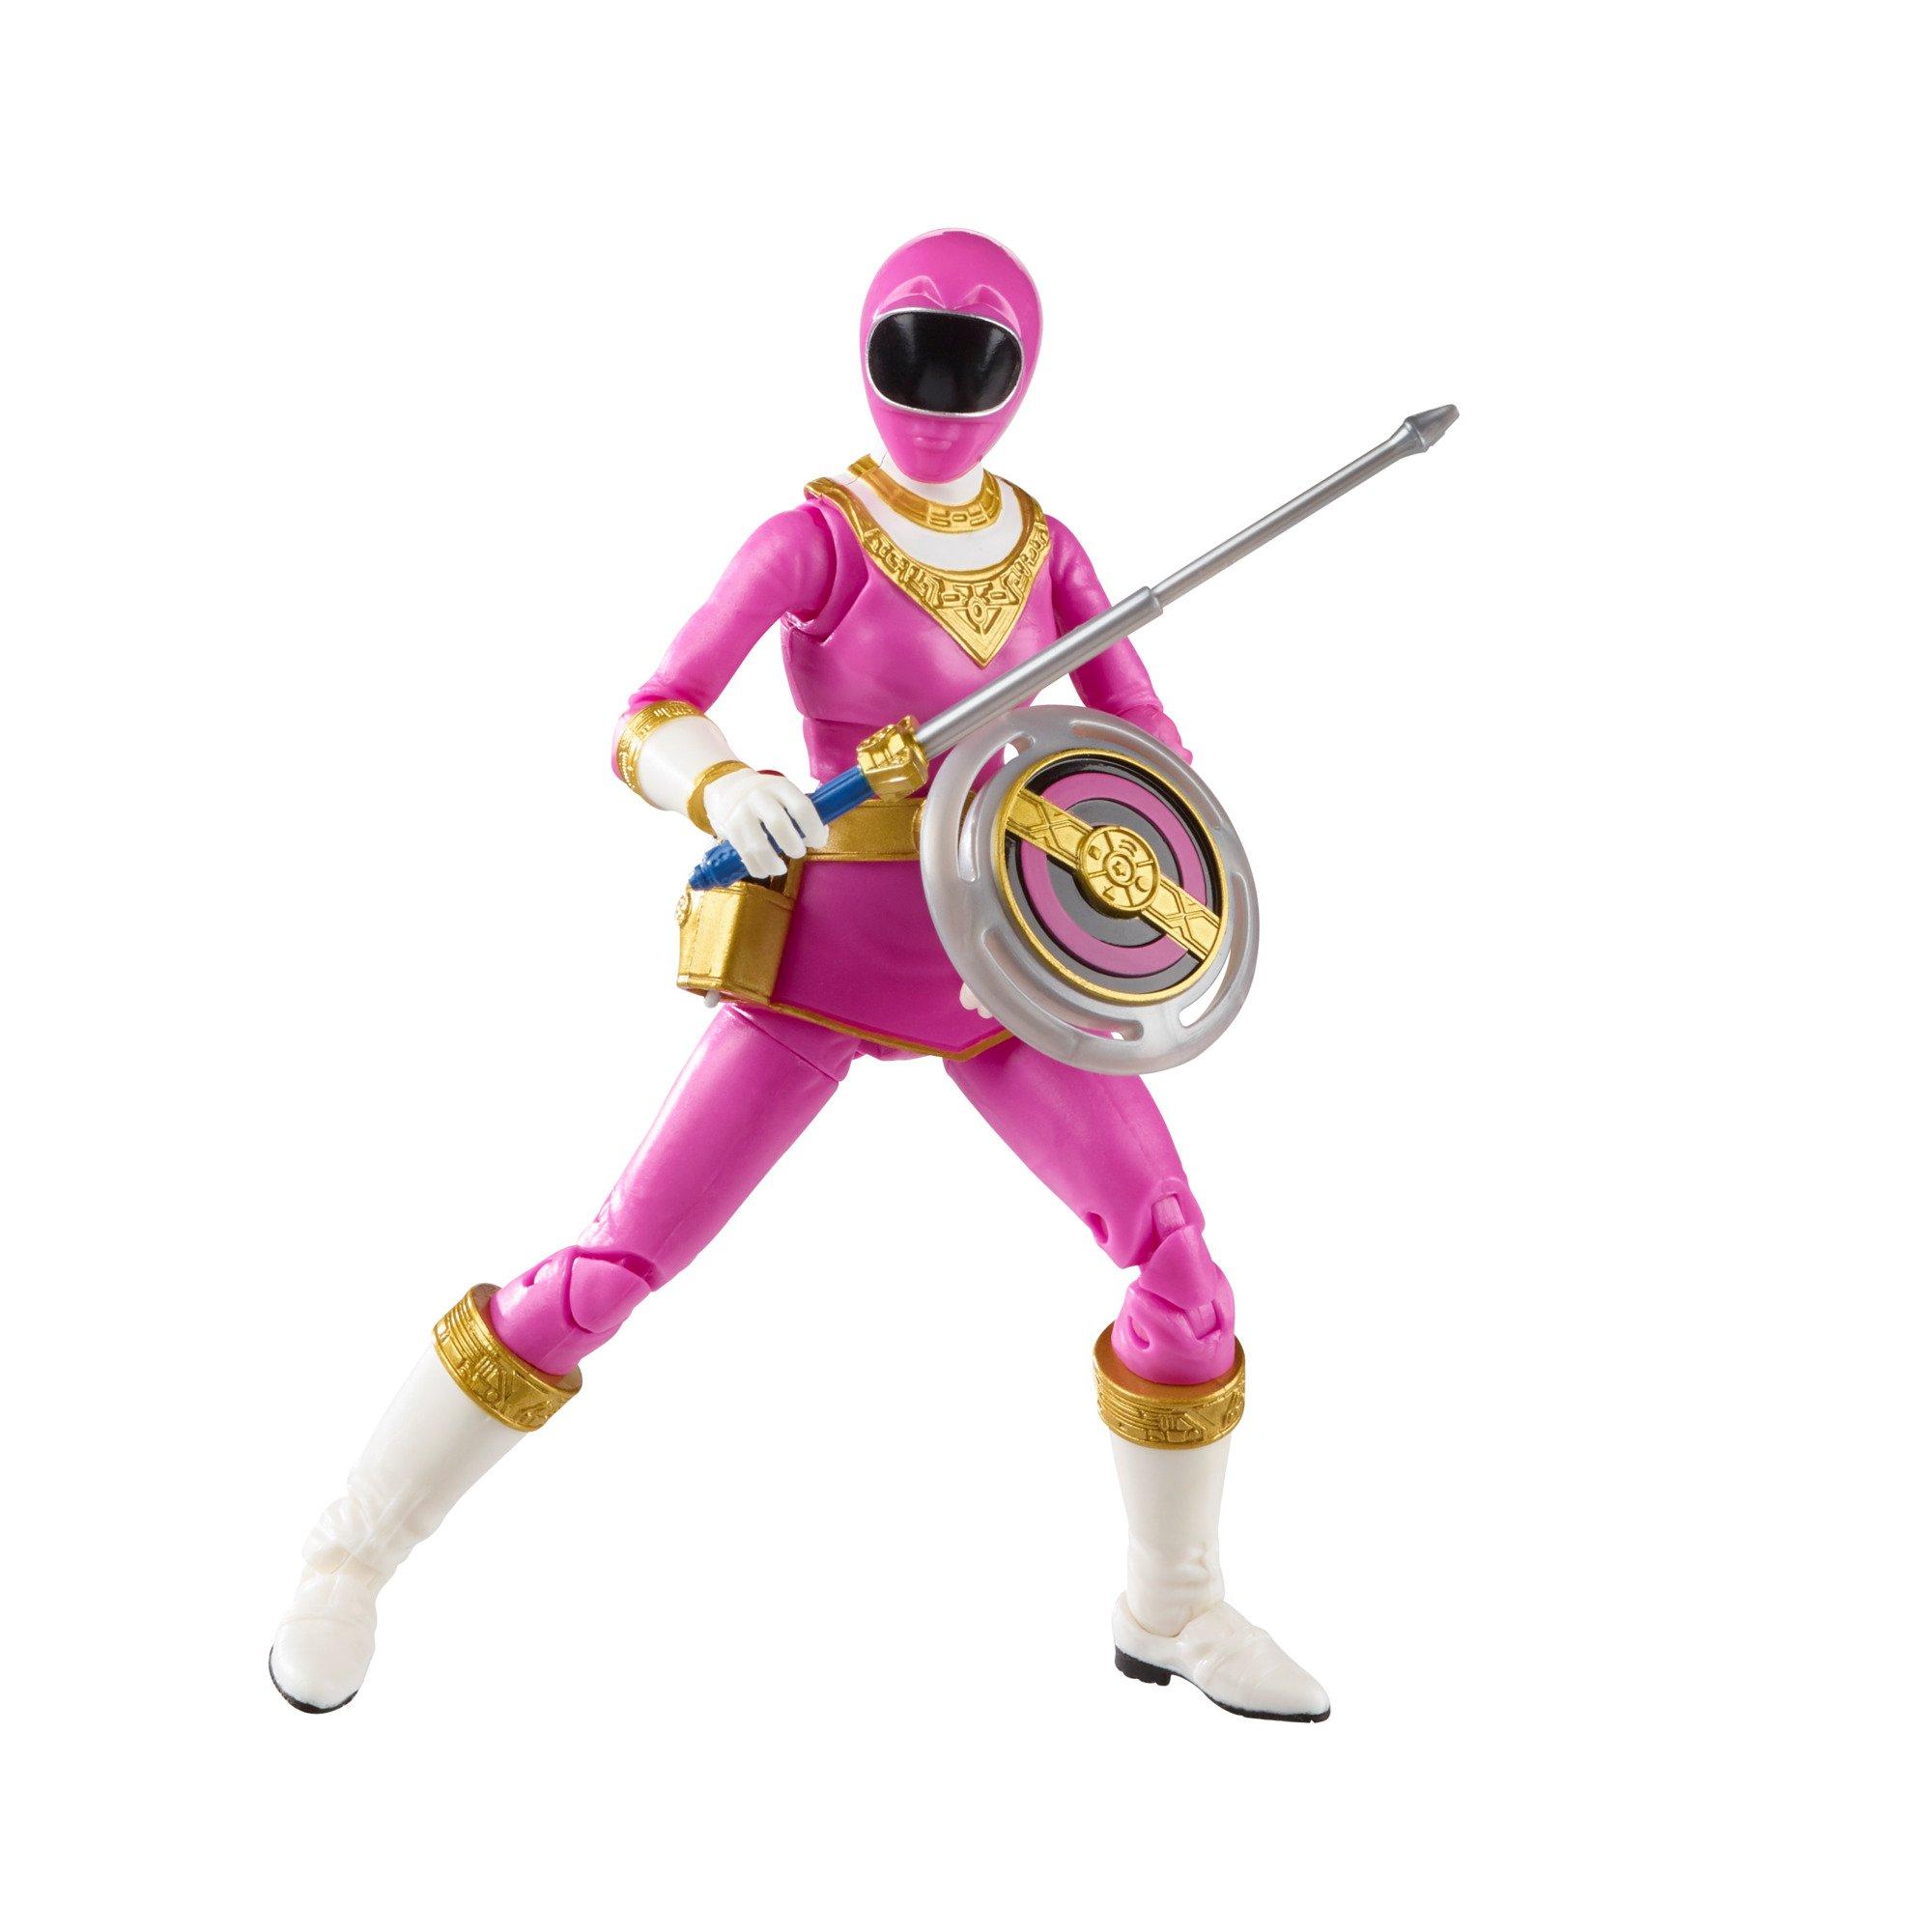 list item 4 of 10 Hasbro Mighty Morphin Power Rangers Pink Ranger and Zeo Pink Ranger Set 6-in Action Figure GameStop Exclusive